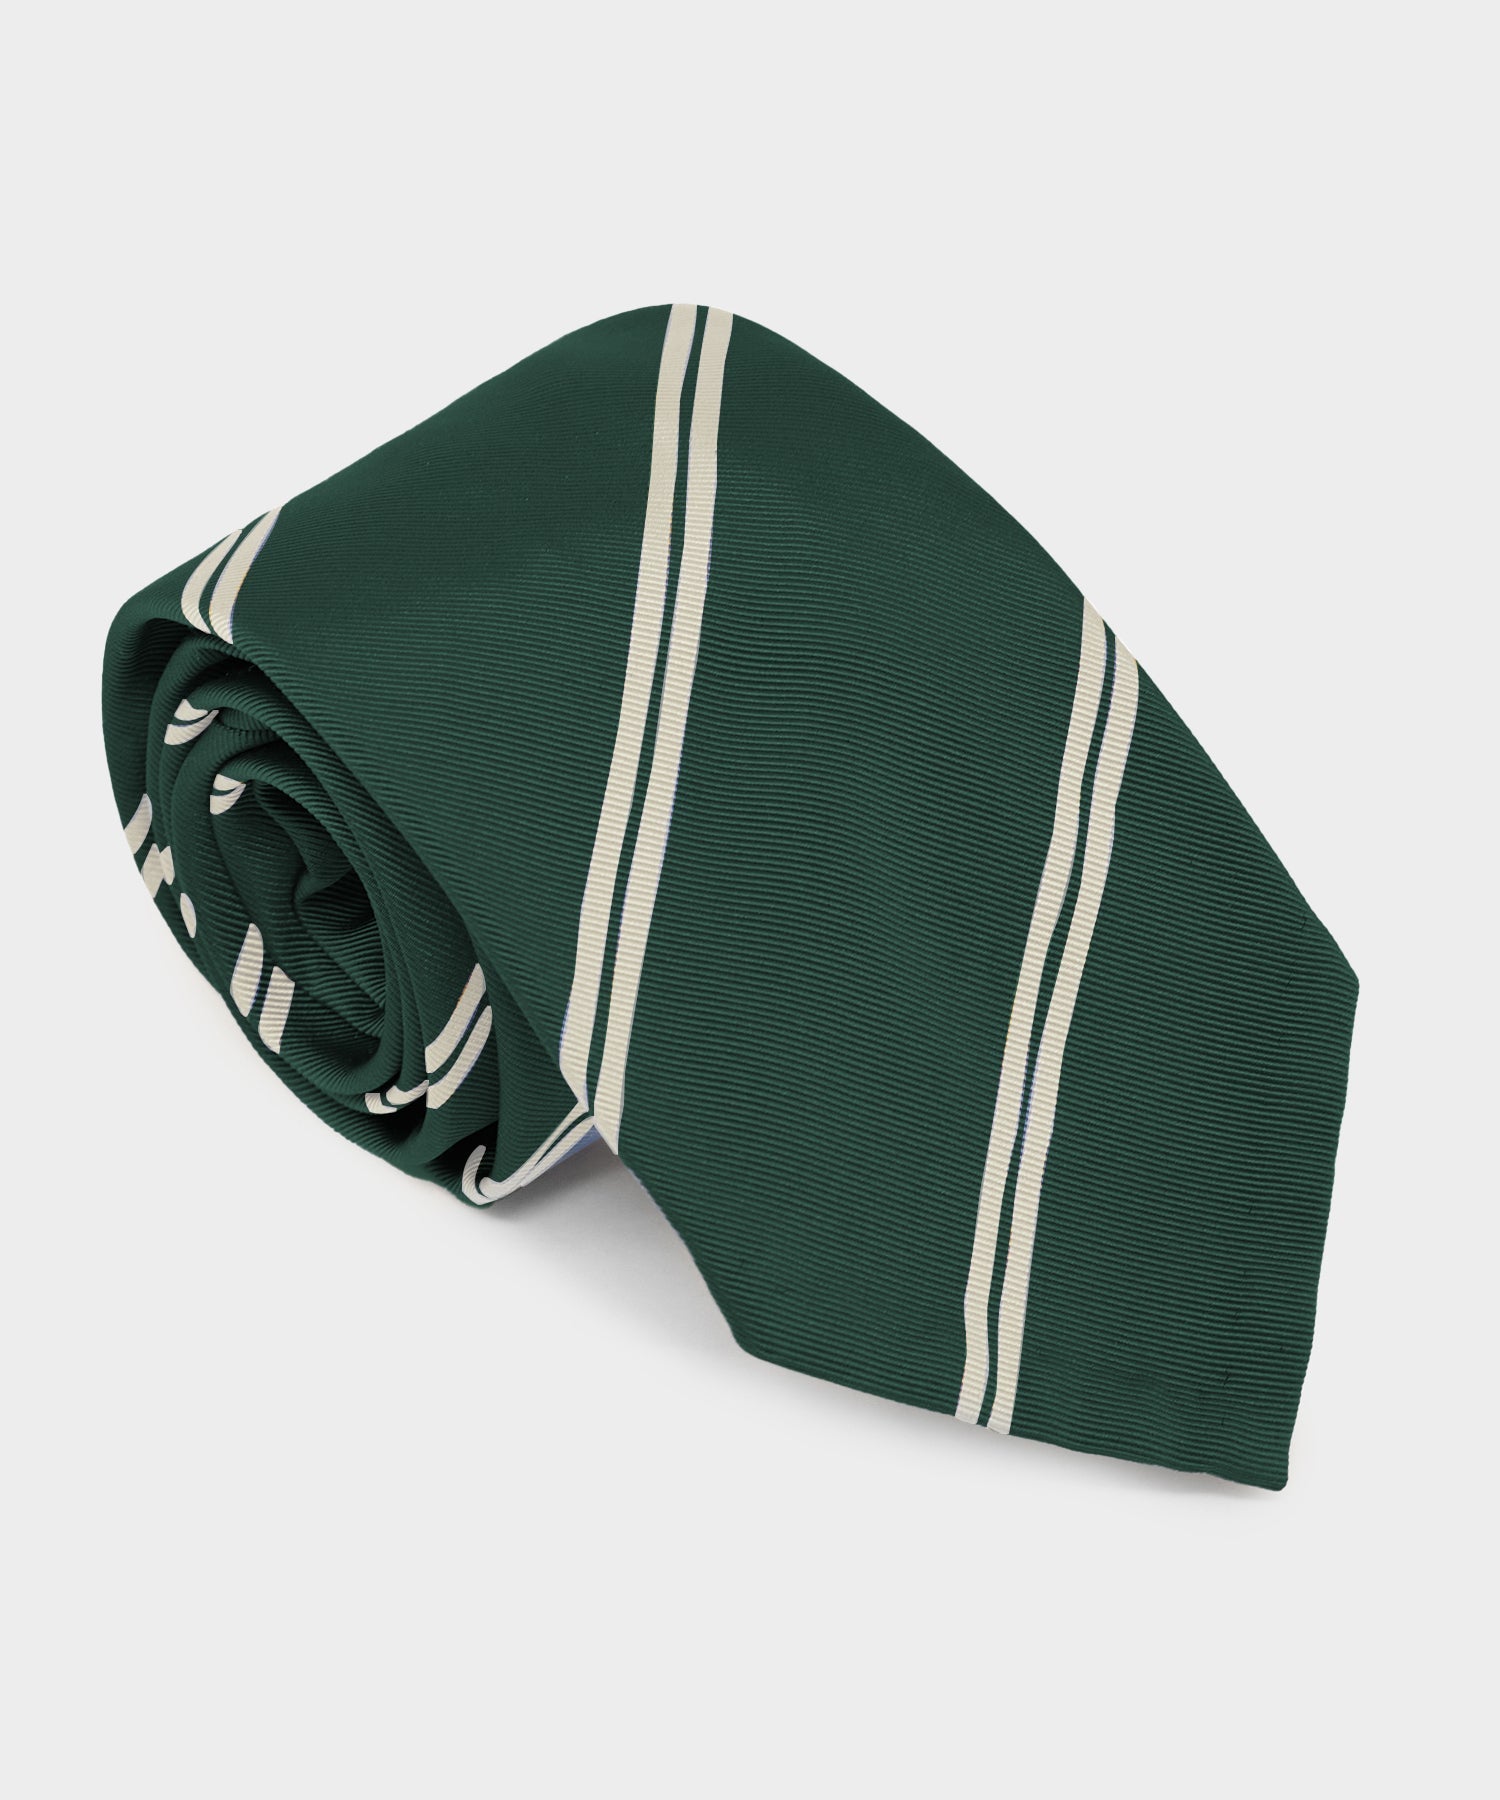 Italian Silk Tie in Evergreen Double Stripe